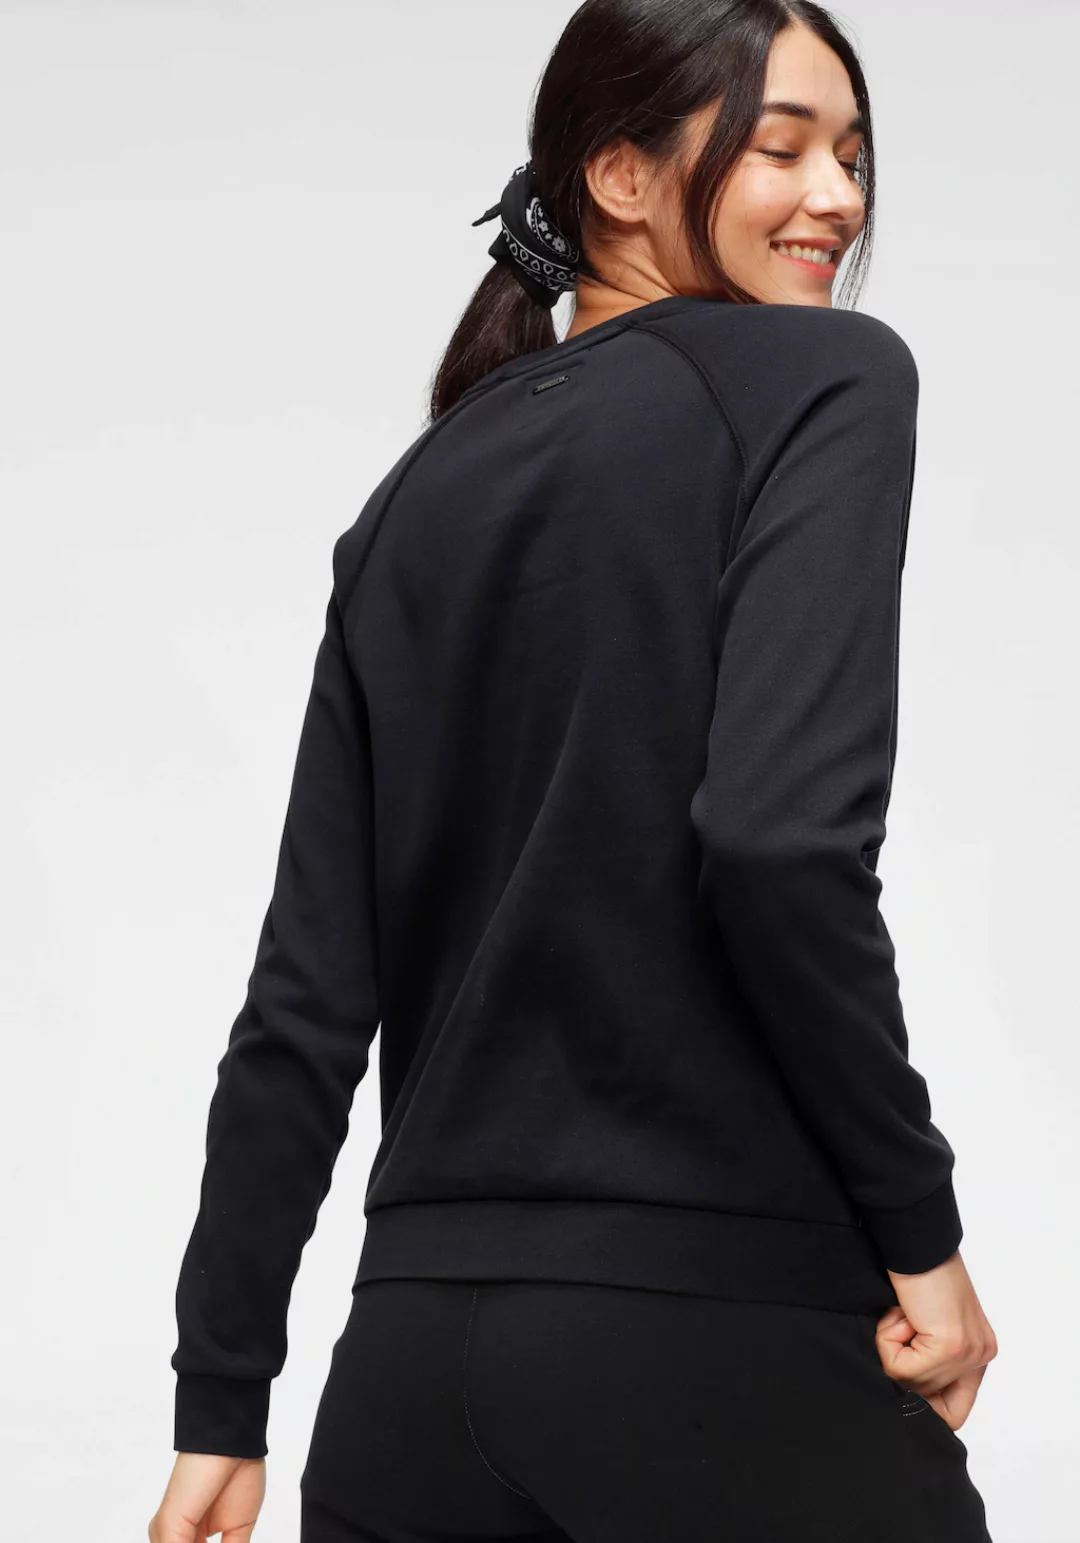 KangaROOS Sweater, mit großem Label-Print vorne günstig online kaufen